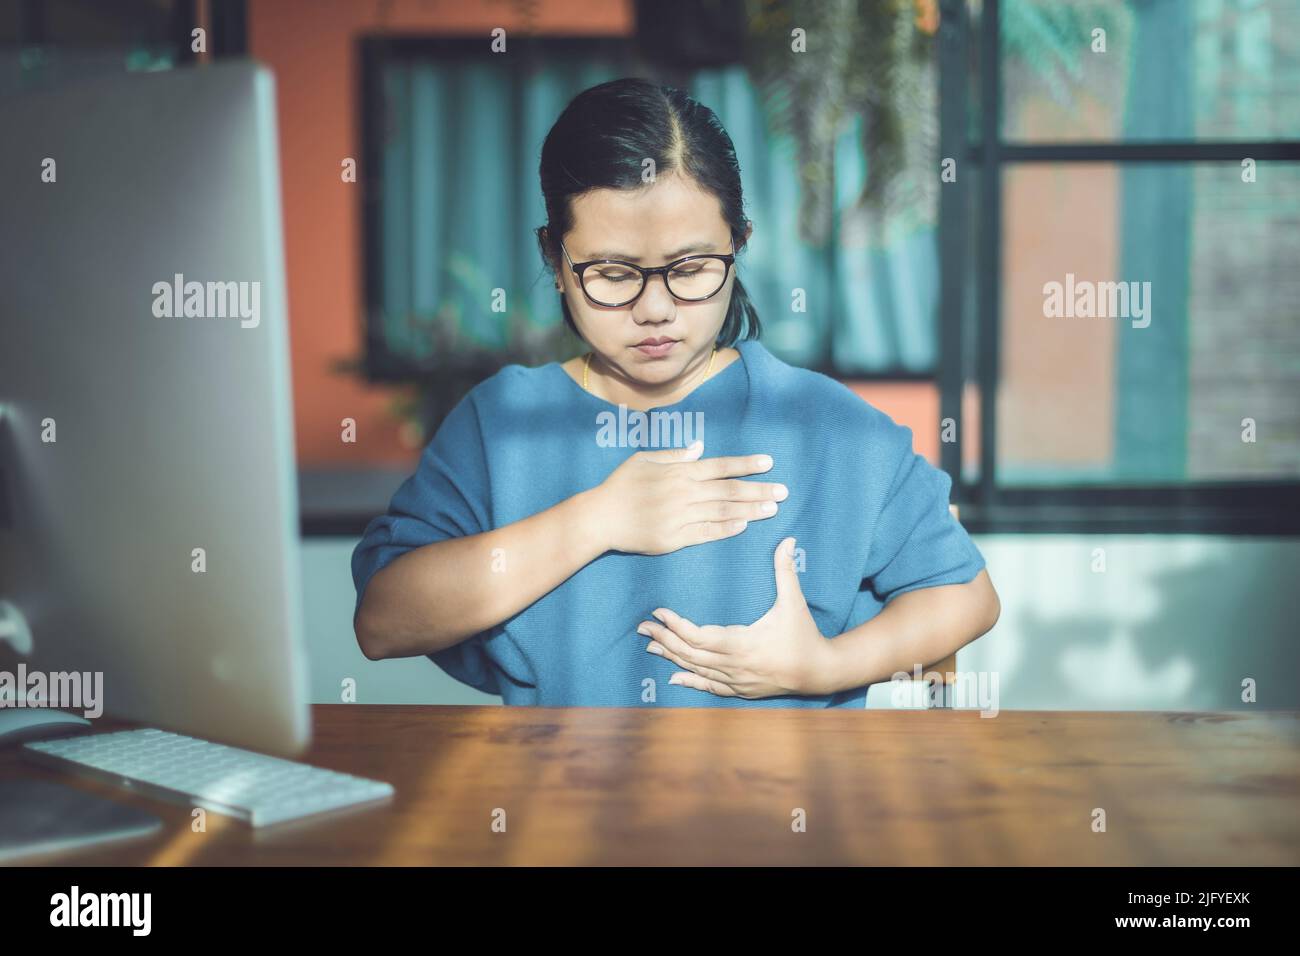 Brustkrebs-Konzept: Asiatische Frau, die Computerbildschirm zum Lernen über das Überprüfen der Brust durch selbst schaut Stockfoto